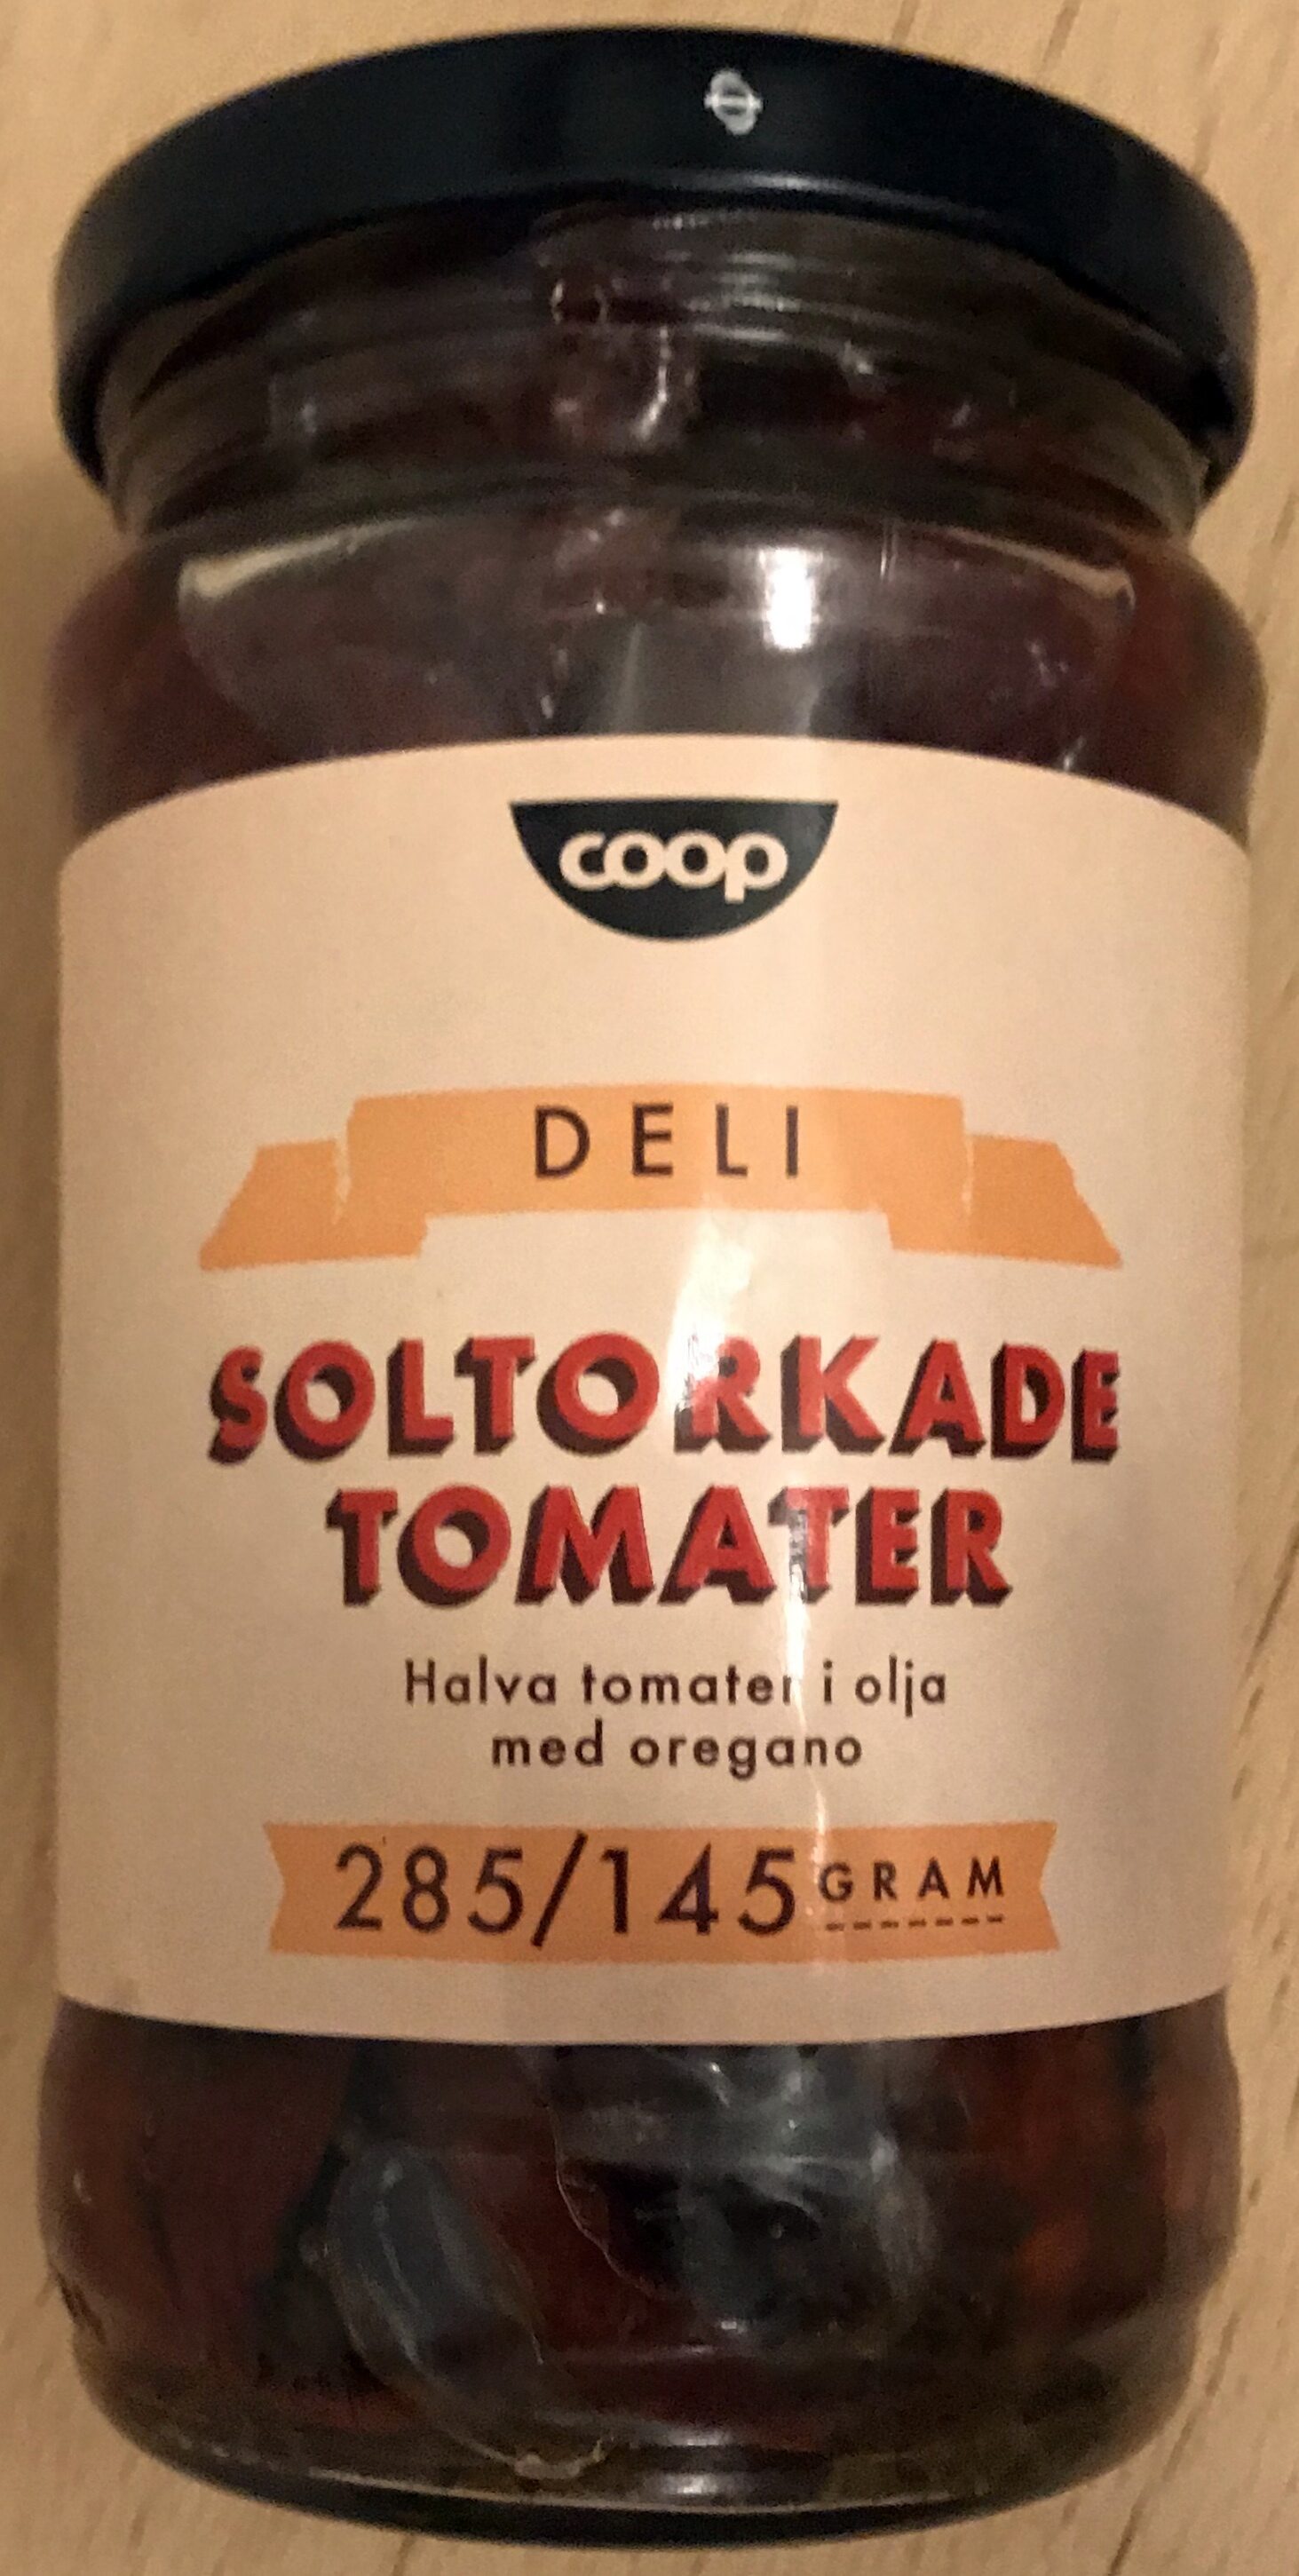 Soltorkade tomater - Produkt - sv